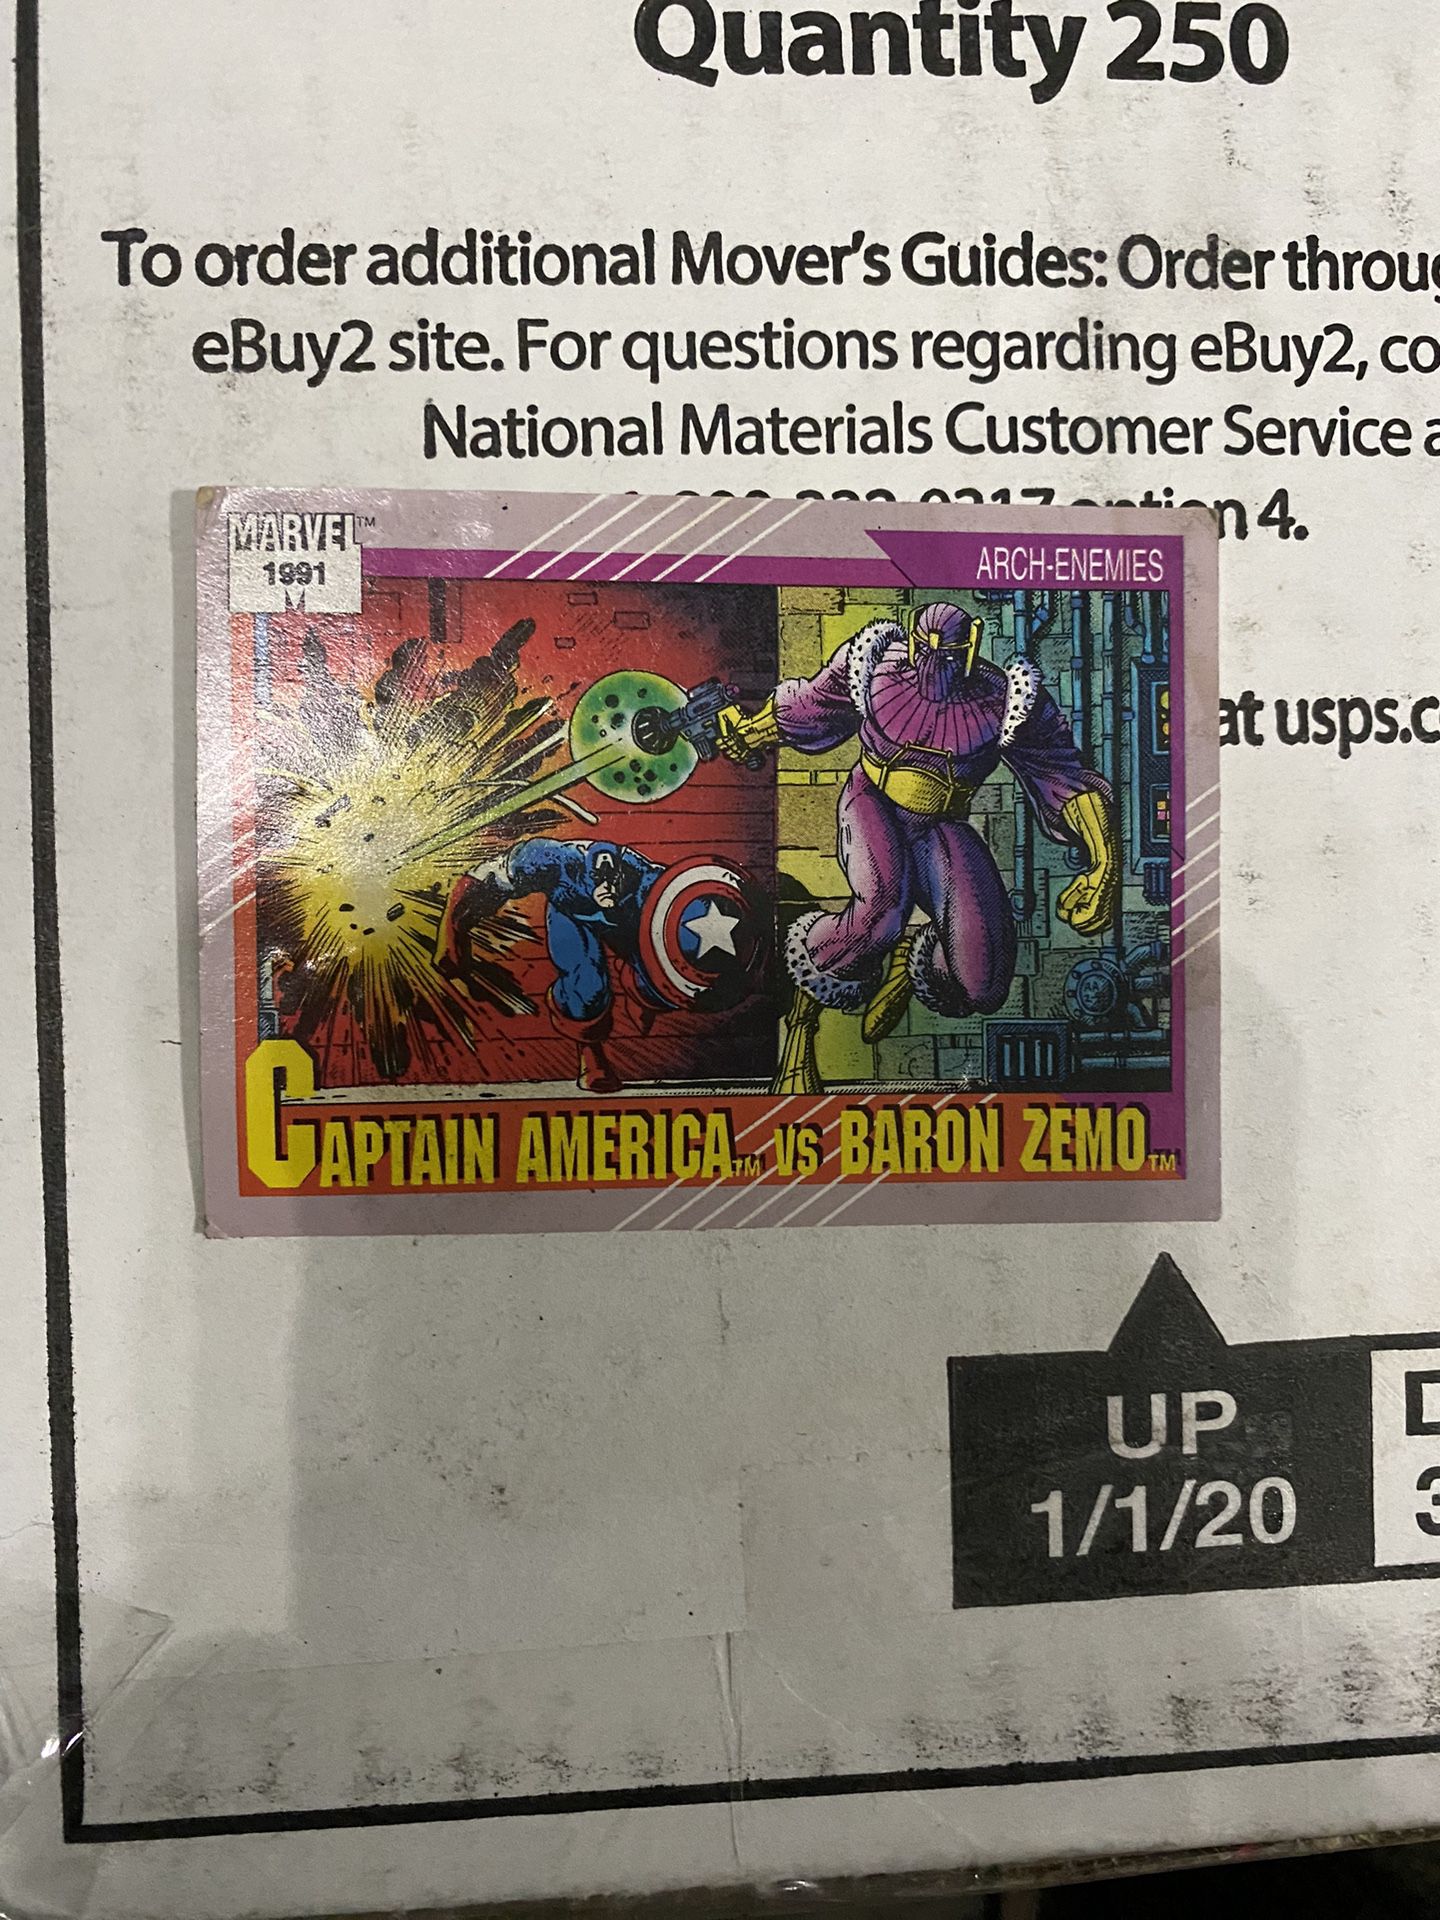 Captain America VsBaron Zemo Card